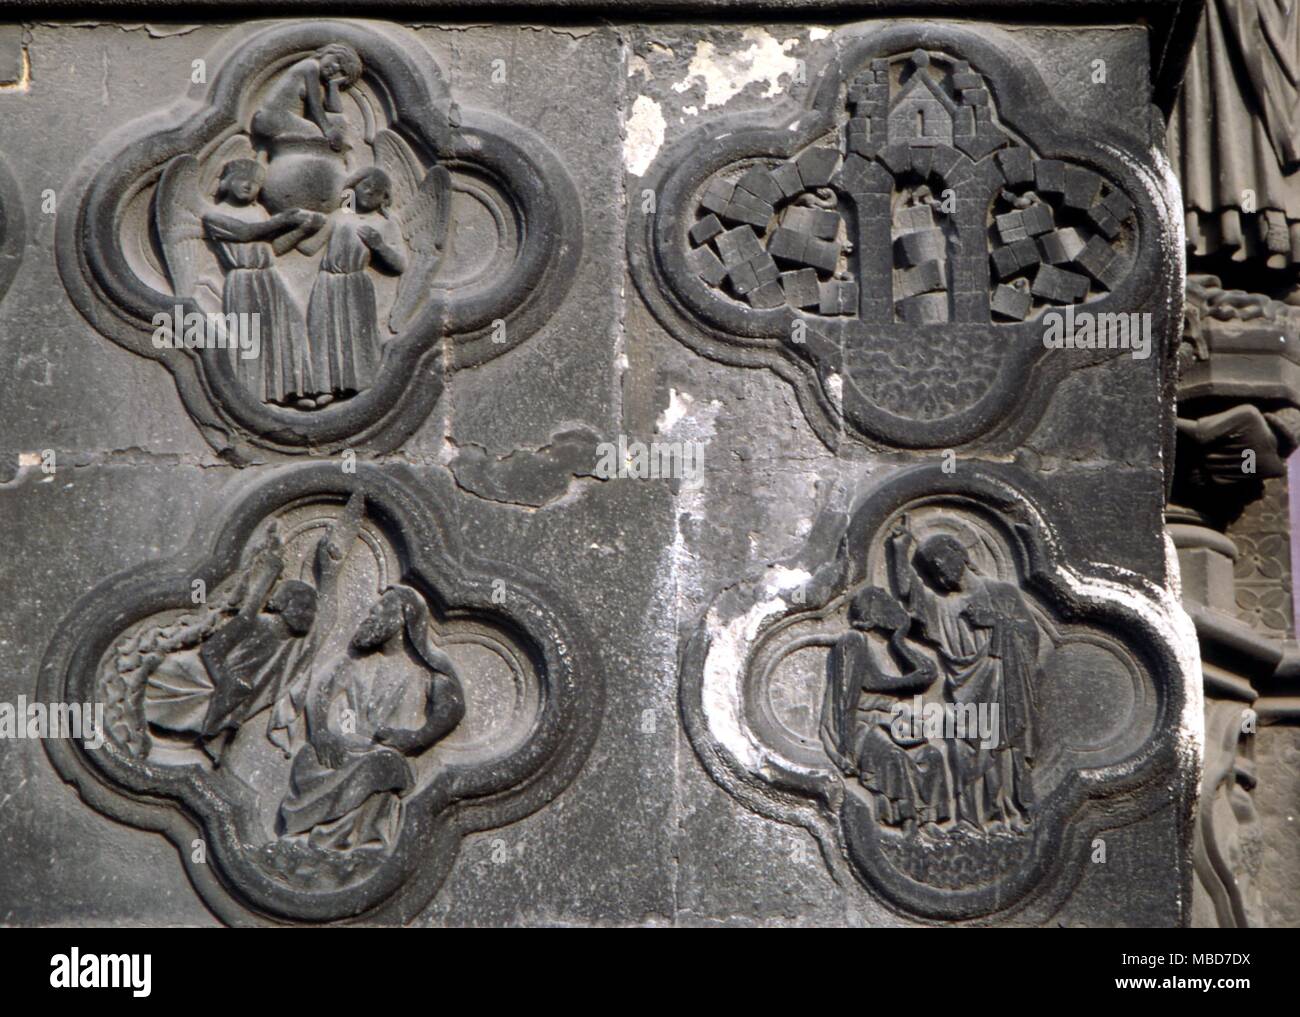 Amiens Symbole - Die alchemistische Zentrales Portal der Kathedrale von Amiens. Für Details, siehe Fulcanelli's 'Le Mystere des Cathedrales', 1971. Stockfoto